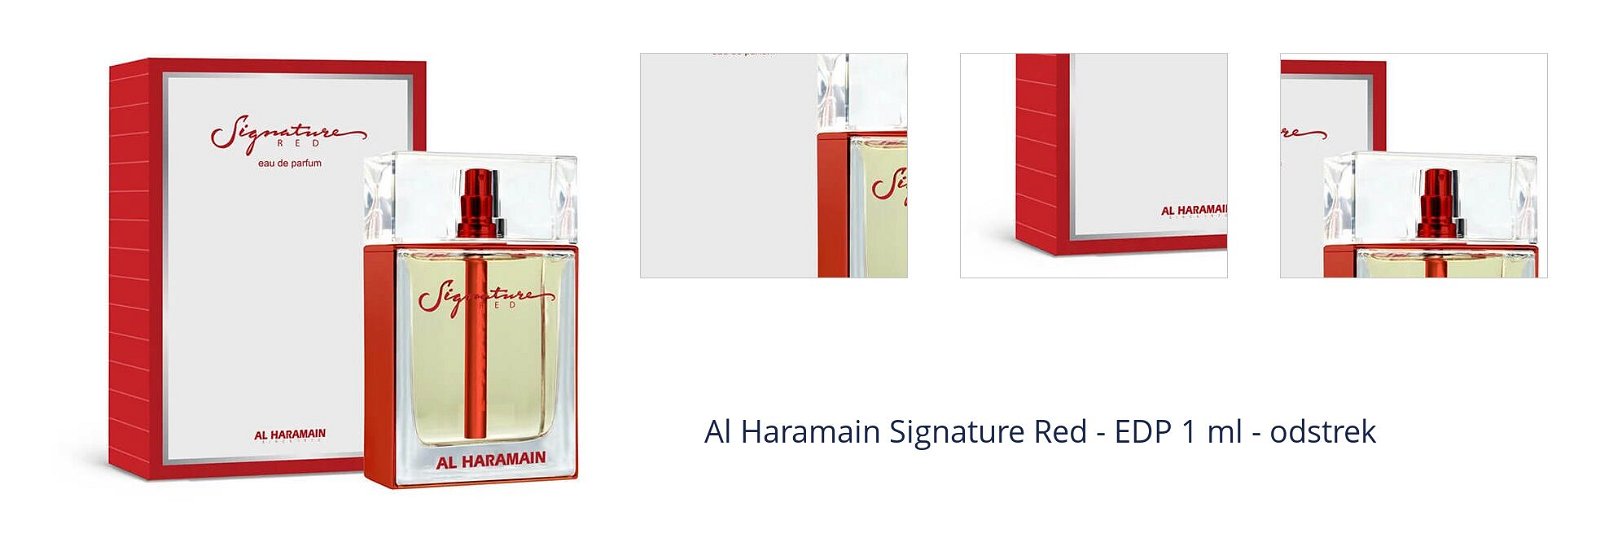 Al Haramain Signature Red - EDP 1 ml - odstrek 1